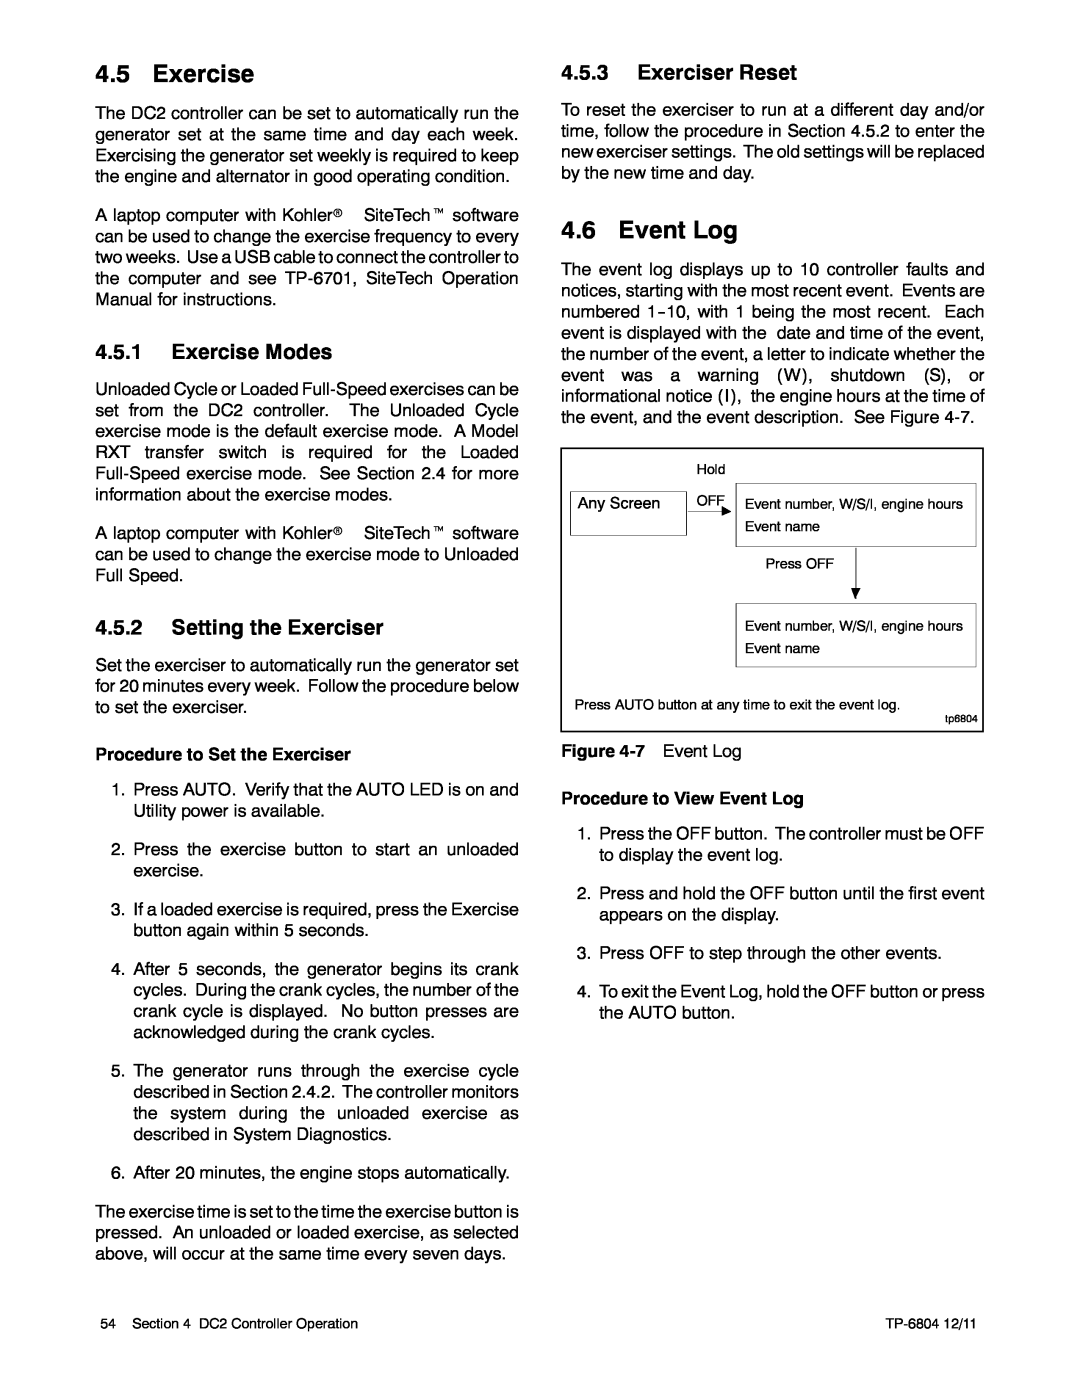 Kohler 14/20RESAL manual Event Log, Exercise Modes, Exerciser Reset, Setting the Exerciser 